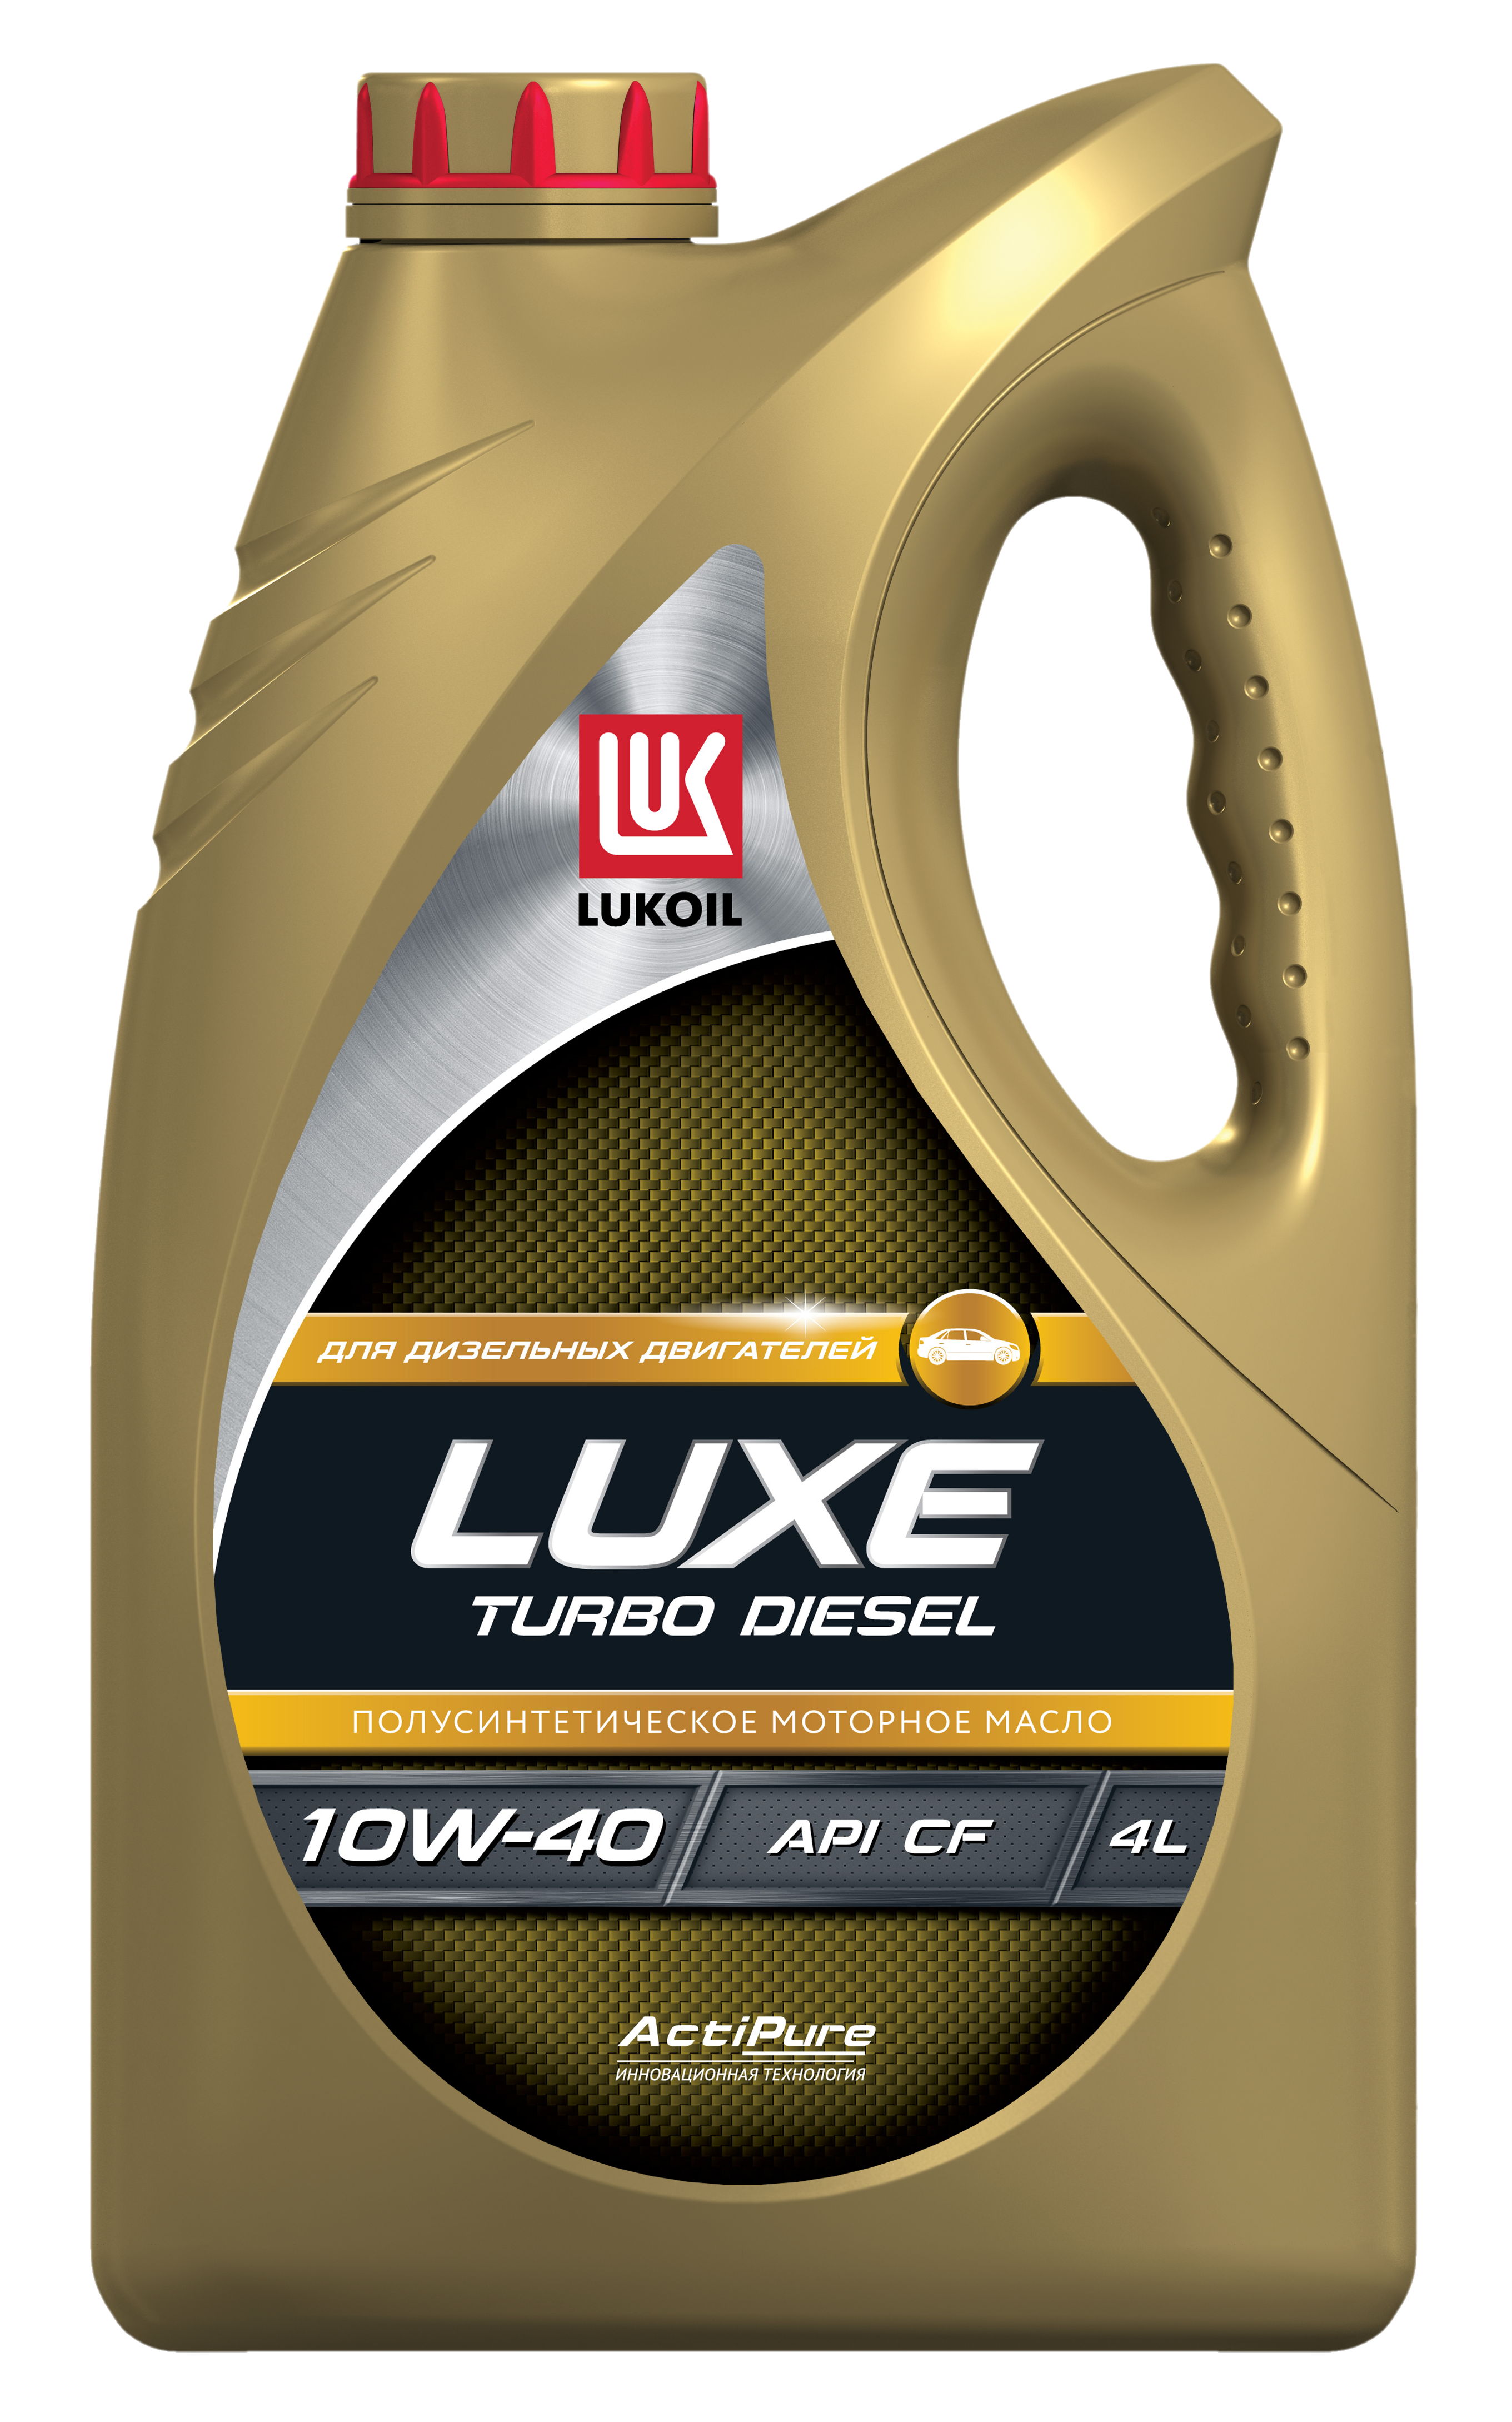 LUKOIL 189323 LUXE TURBO DIESEL 10W-40 4л масло моторное полусинтетическое